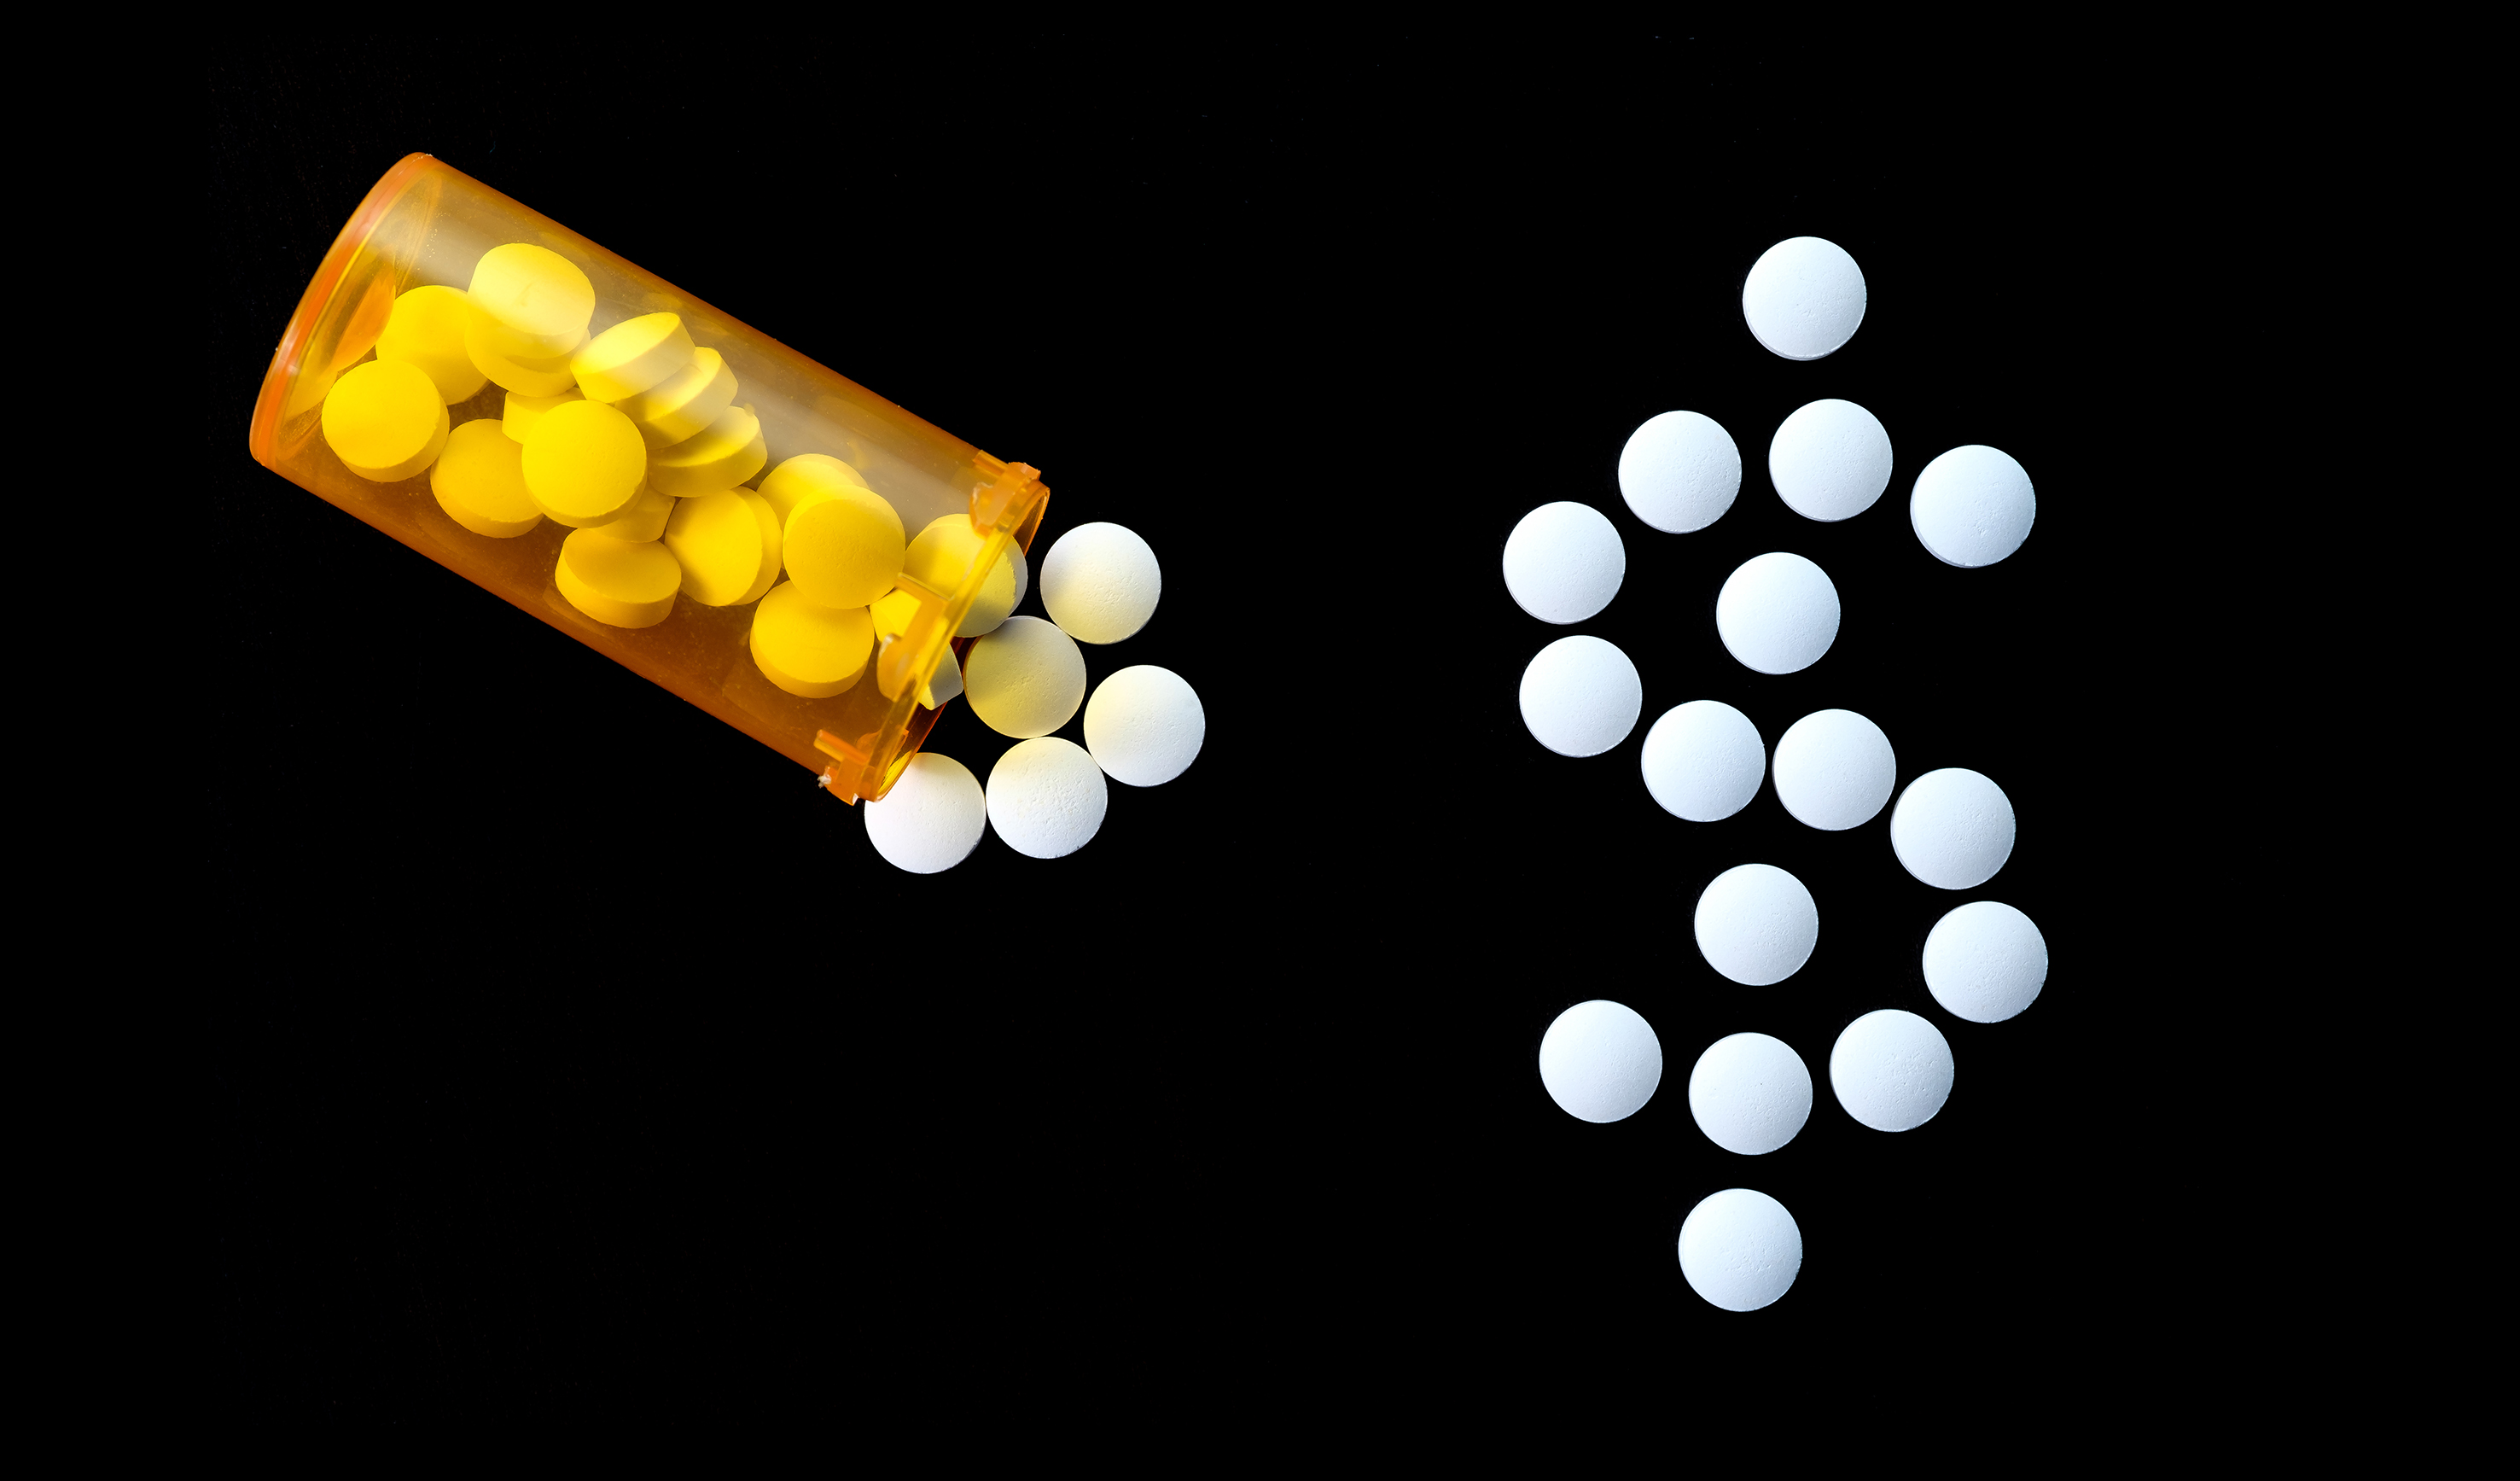 Regulación de calidad en mercados farmacéuticos: ¿más o menos competencia?